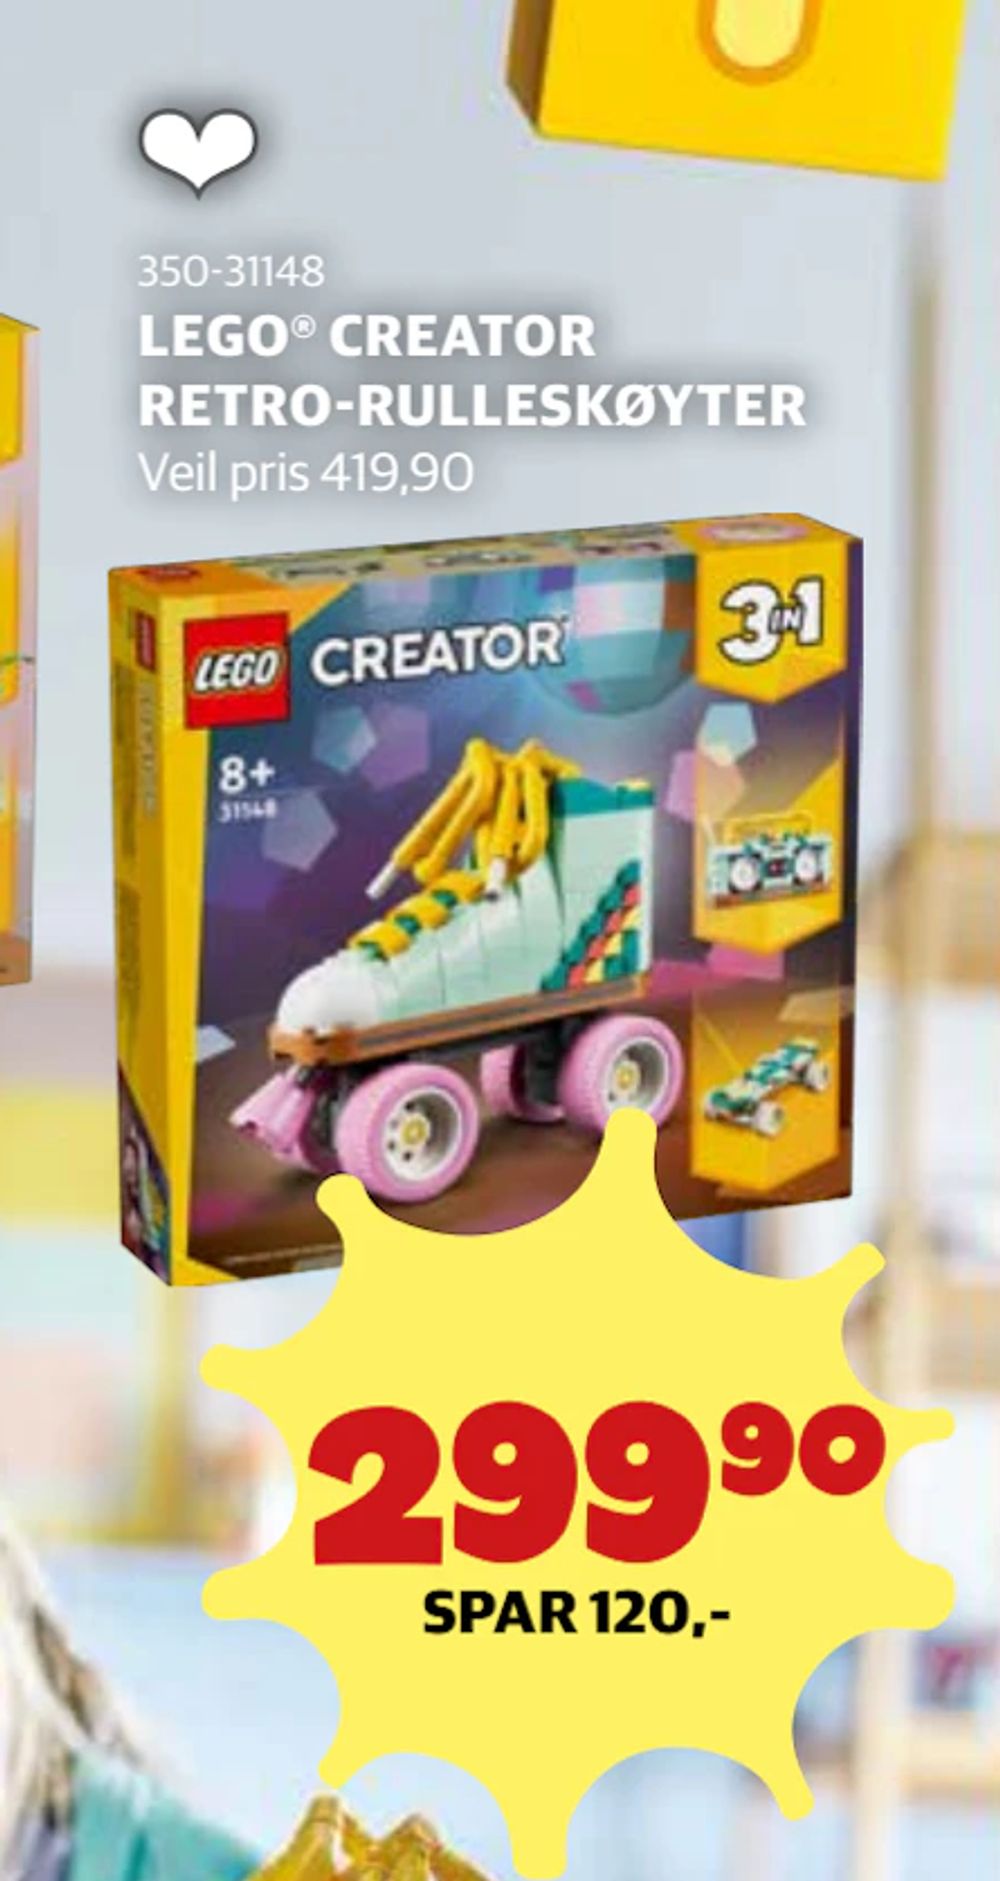 Tilbud på LEGO® CREATOR RETRO-RULLESKØYTER fra Lekia til 299,90 kr